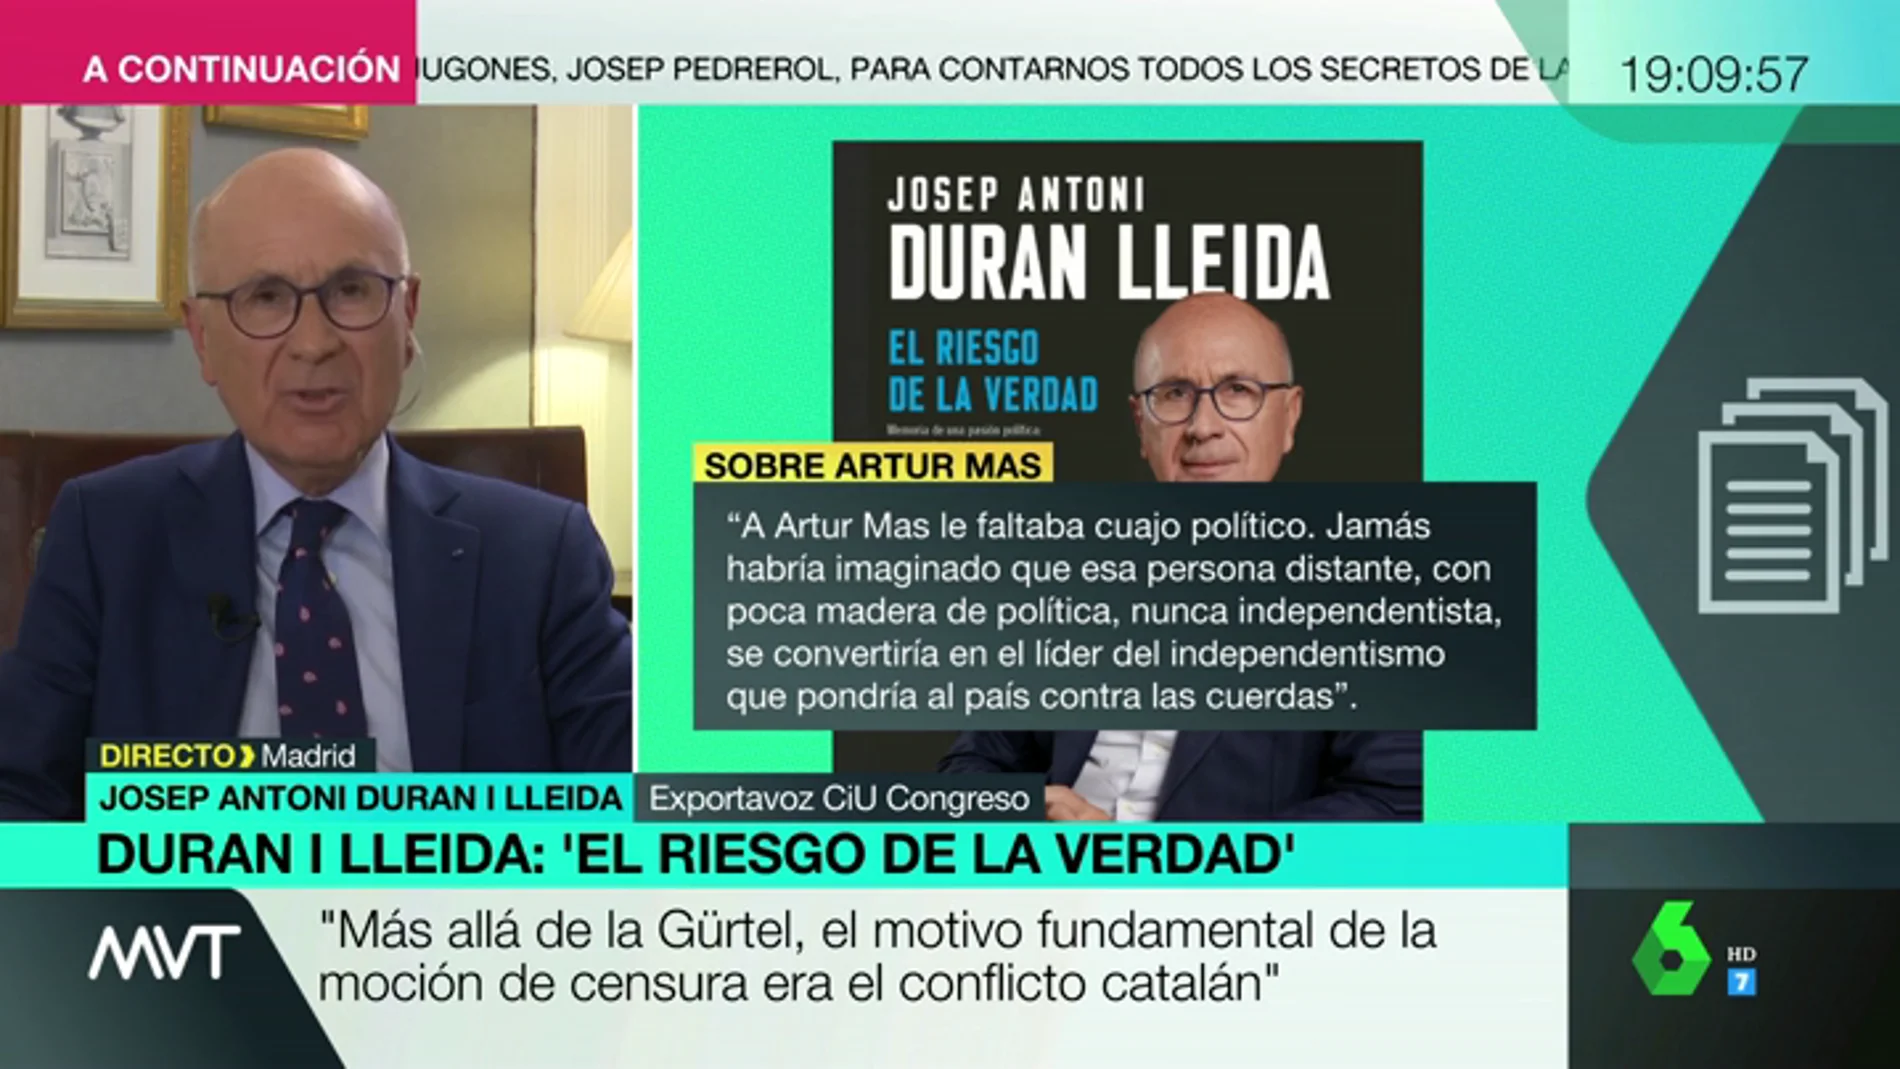 Duran i Lleida: "Los catalanes han sido engañados por los independentistas que decían que esto era pan comido"